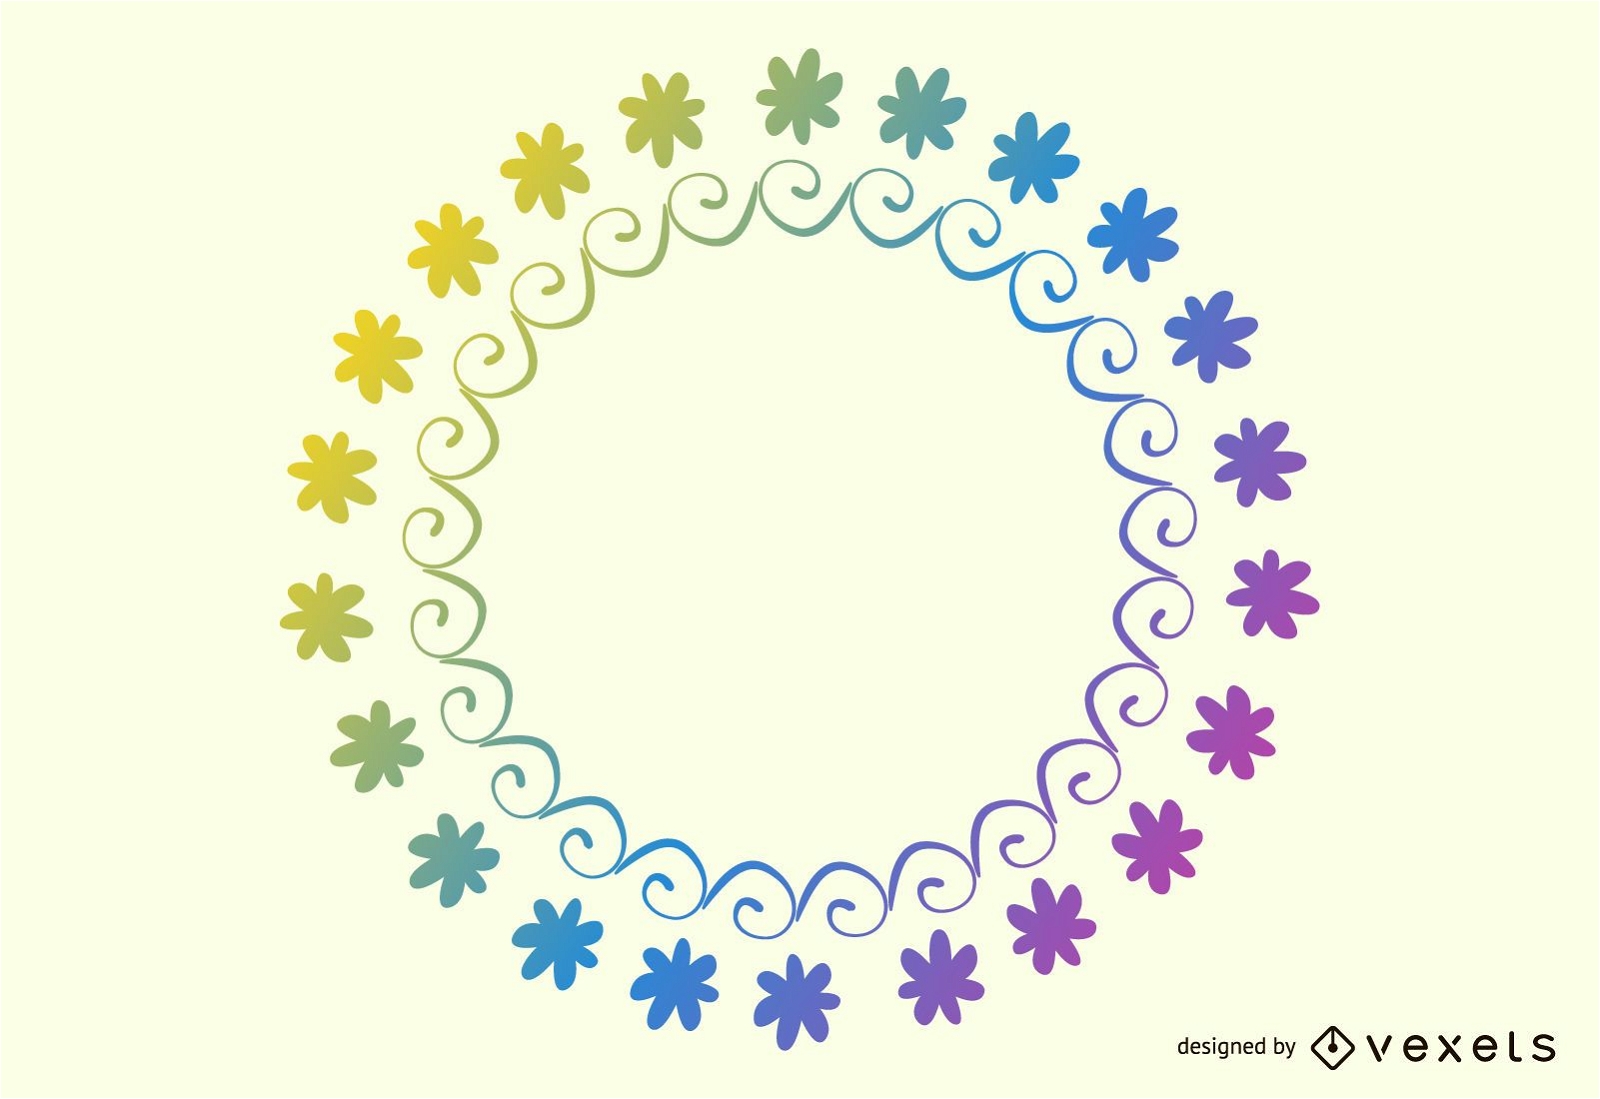 Marco circular floral arco iris simplista